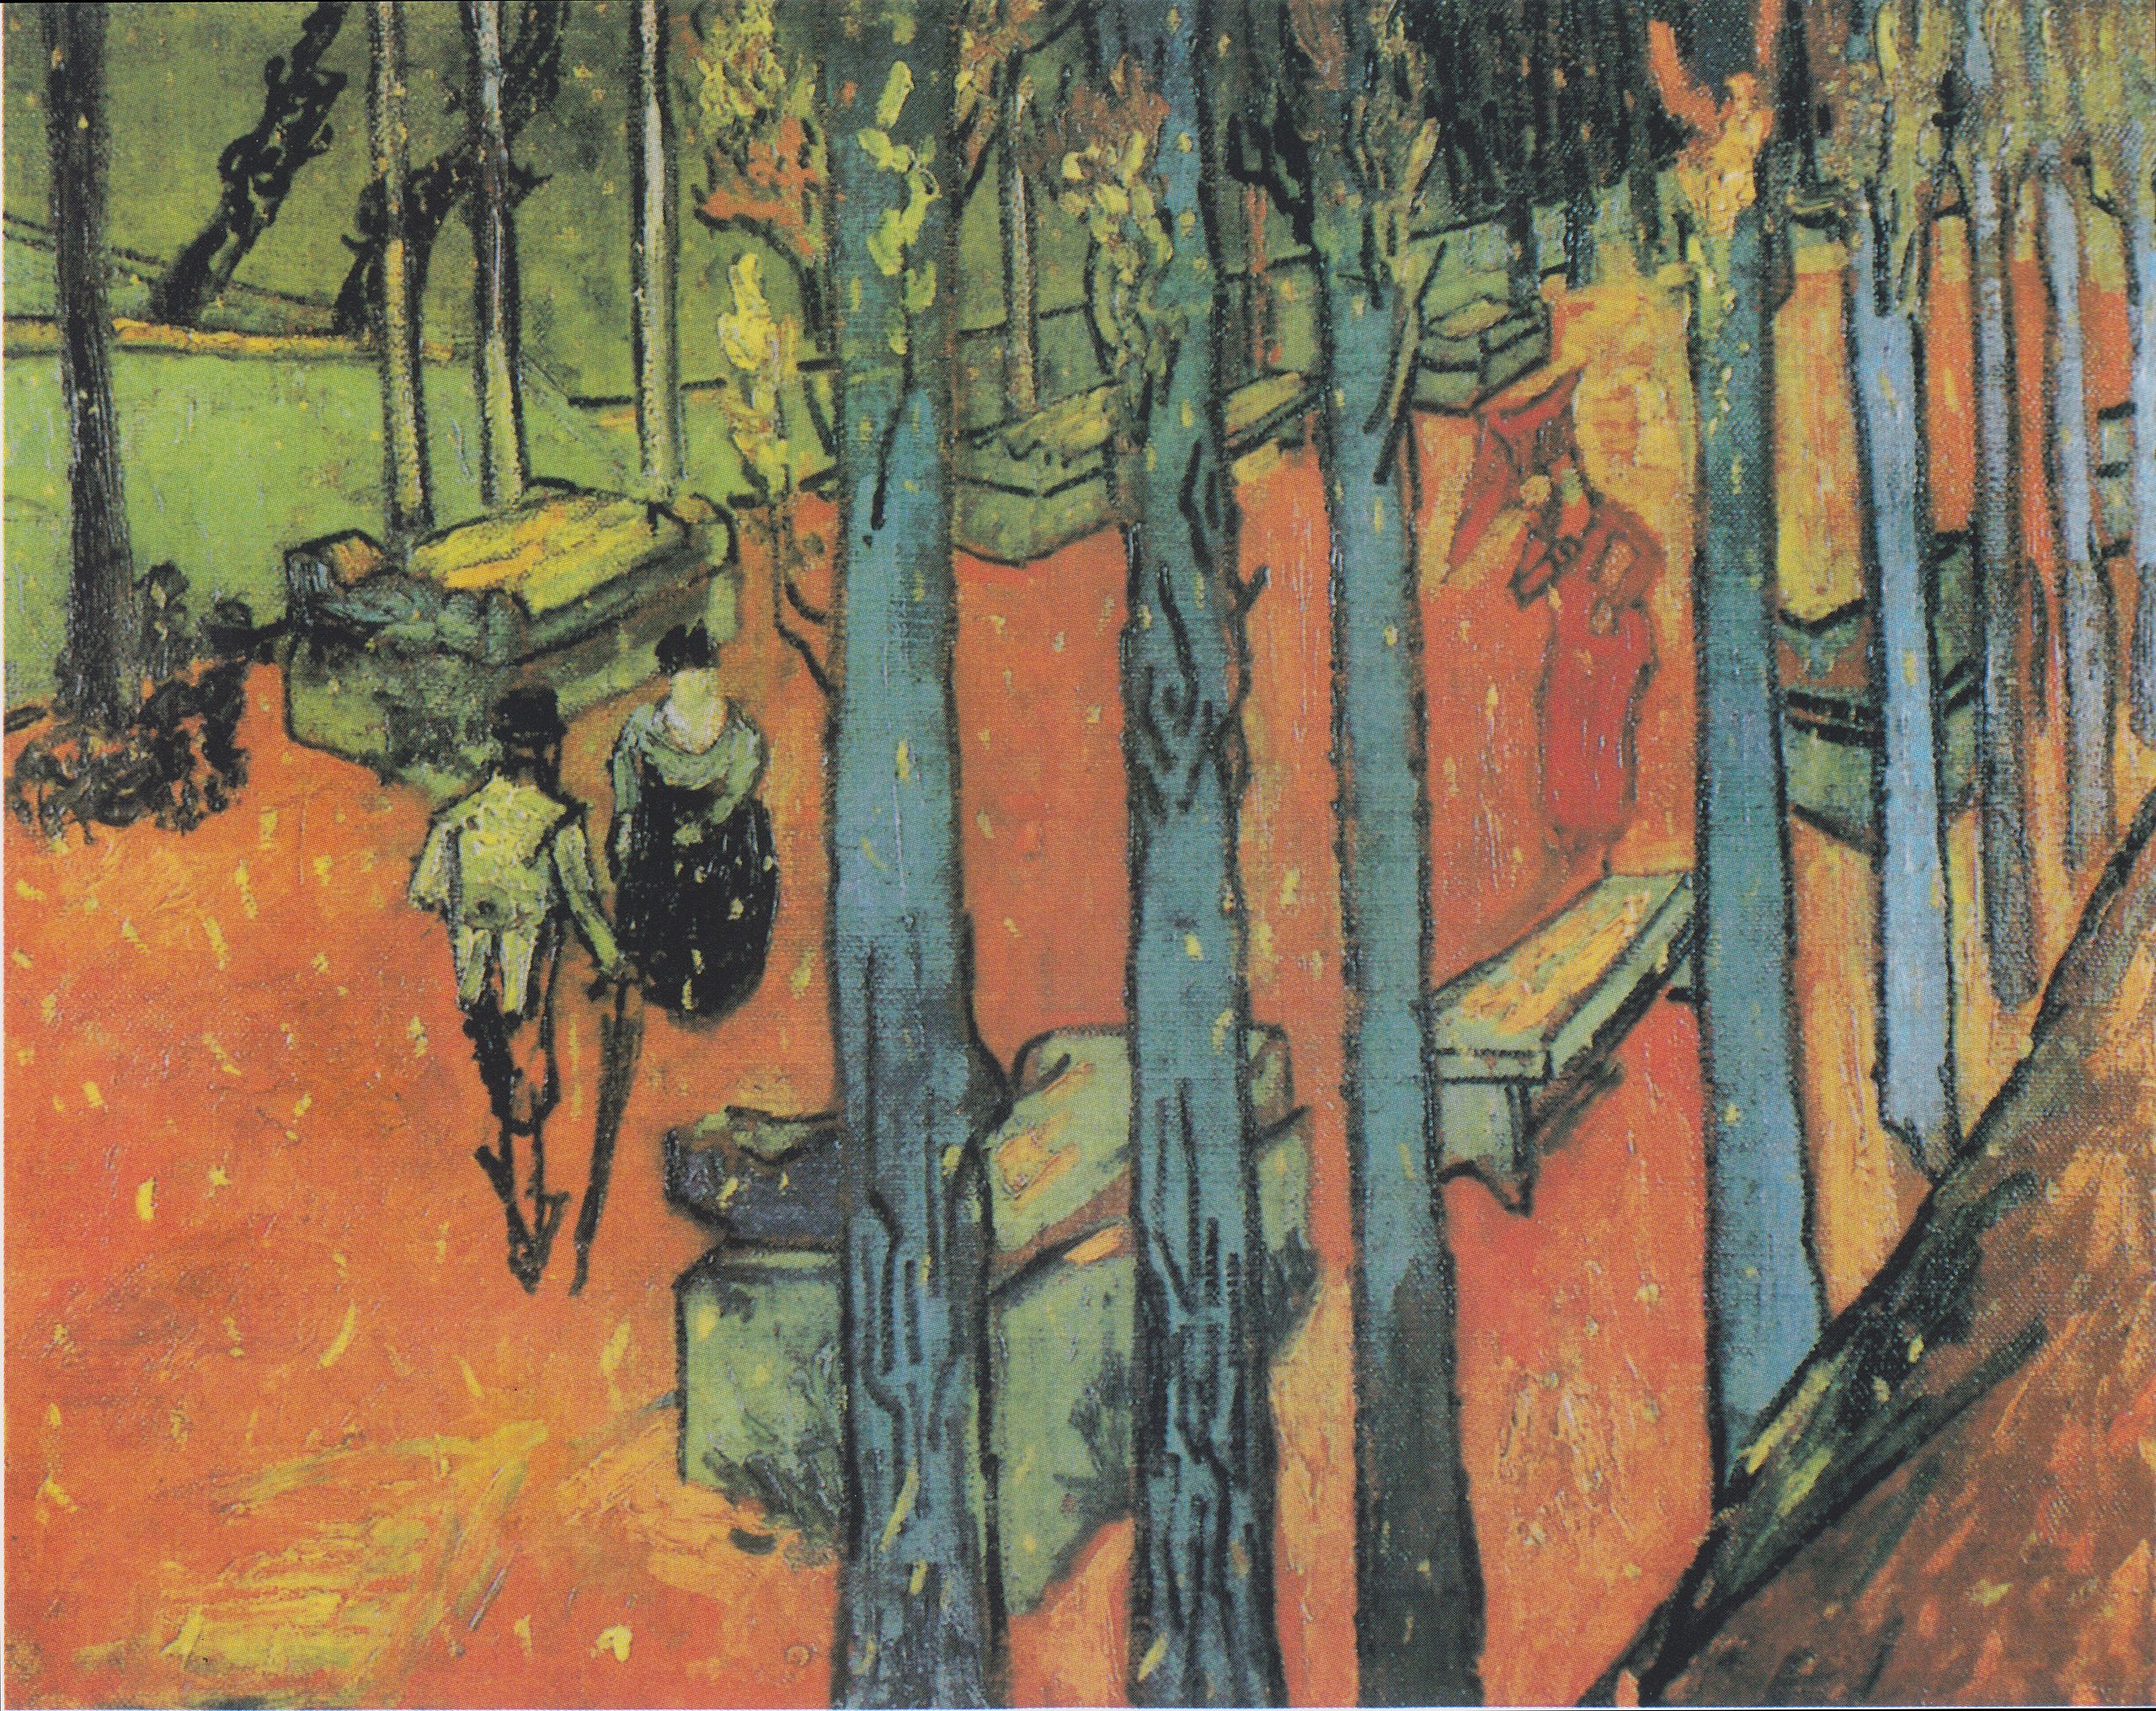 Foglie che cadono (Les Alyscamps) by Vincent van Gogh - 1888 - 72,8 × 91,9 cm Kröller-Müller Museum